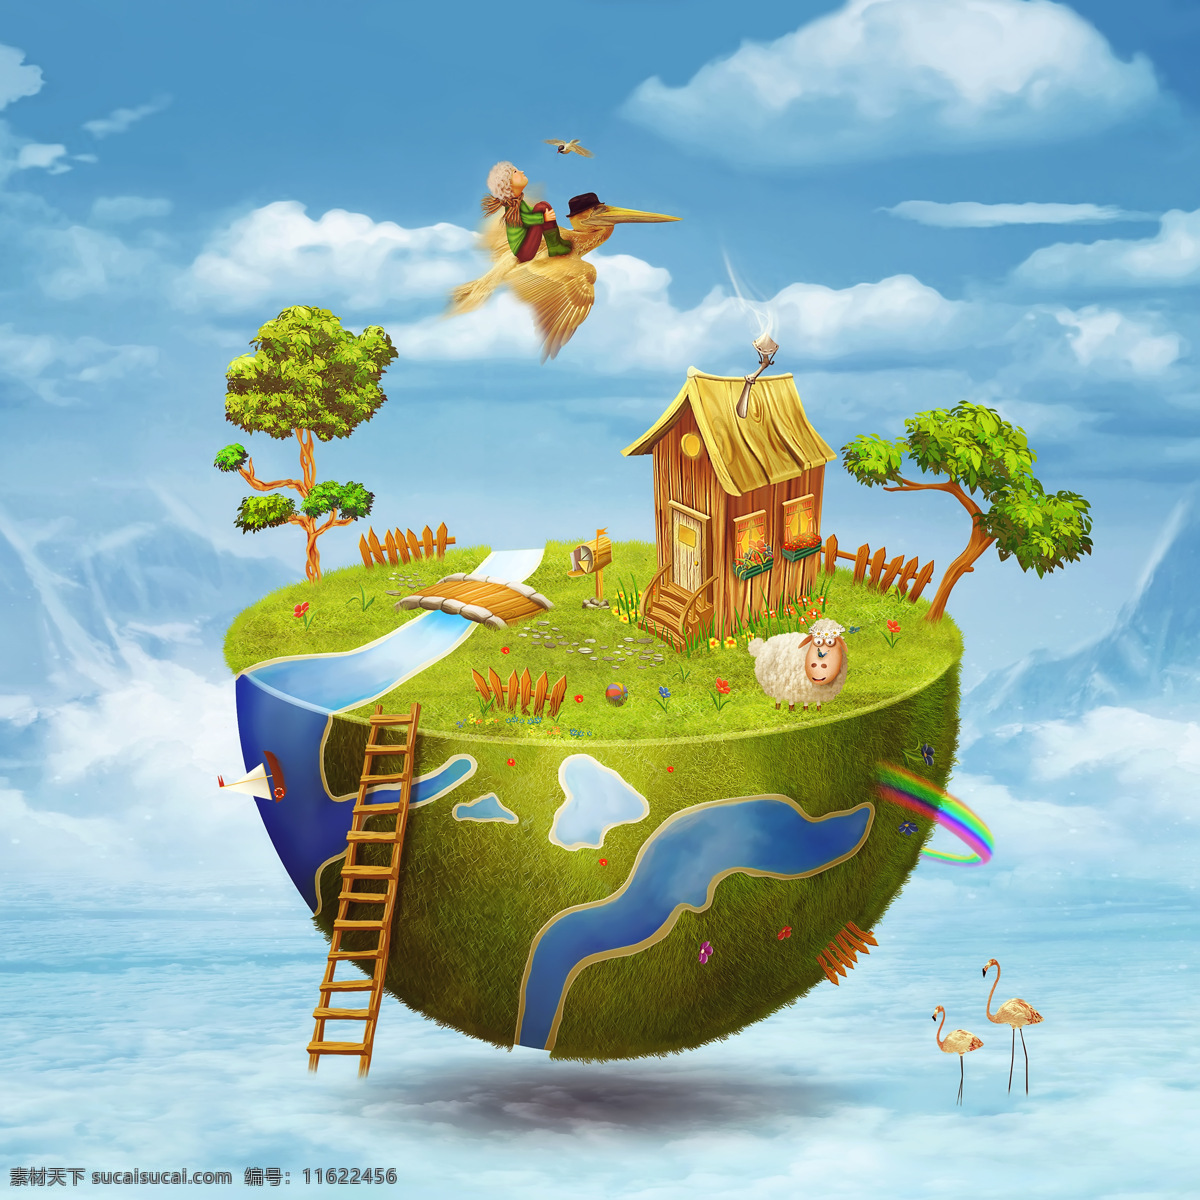 地球 上 动画 王国 地球上的房屋 半个立体地球 缤纷多彩地球 绚丽地球 绿色家园 立体地球 动漫王国 卡通漫画 卡通地球 生态环境 卡通动漫 动漫动画